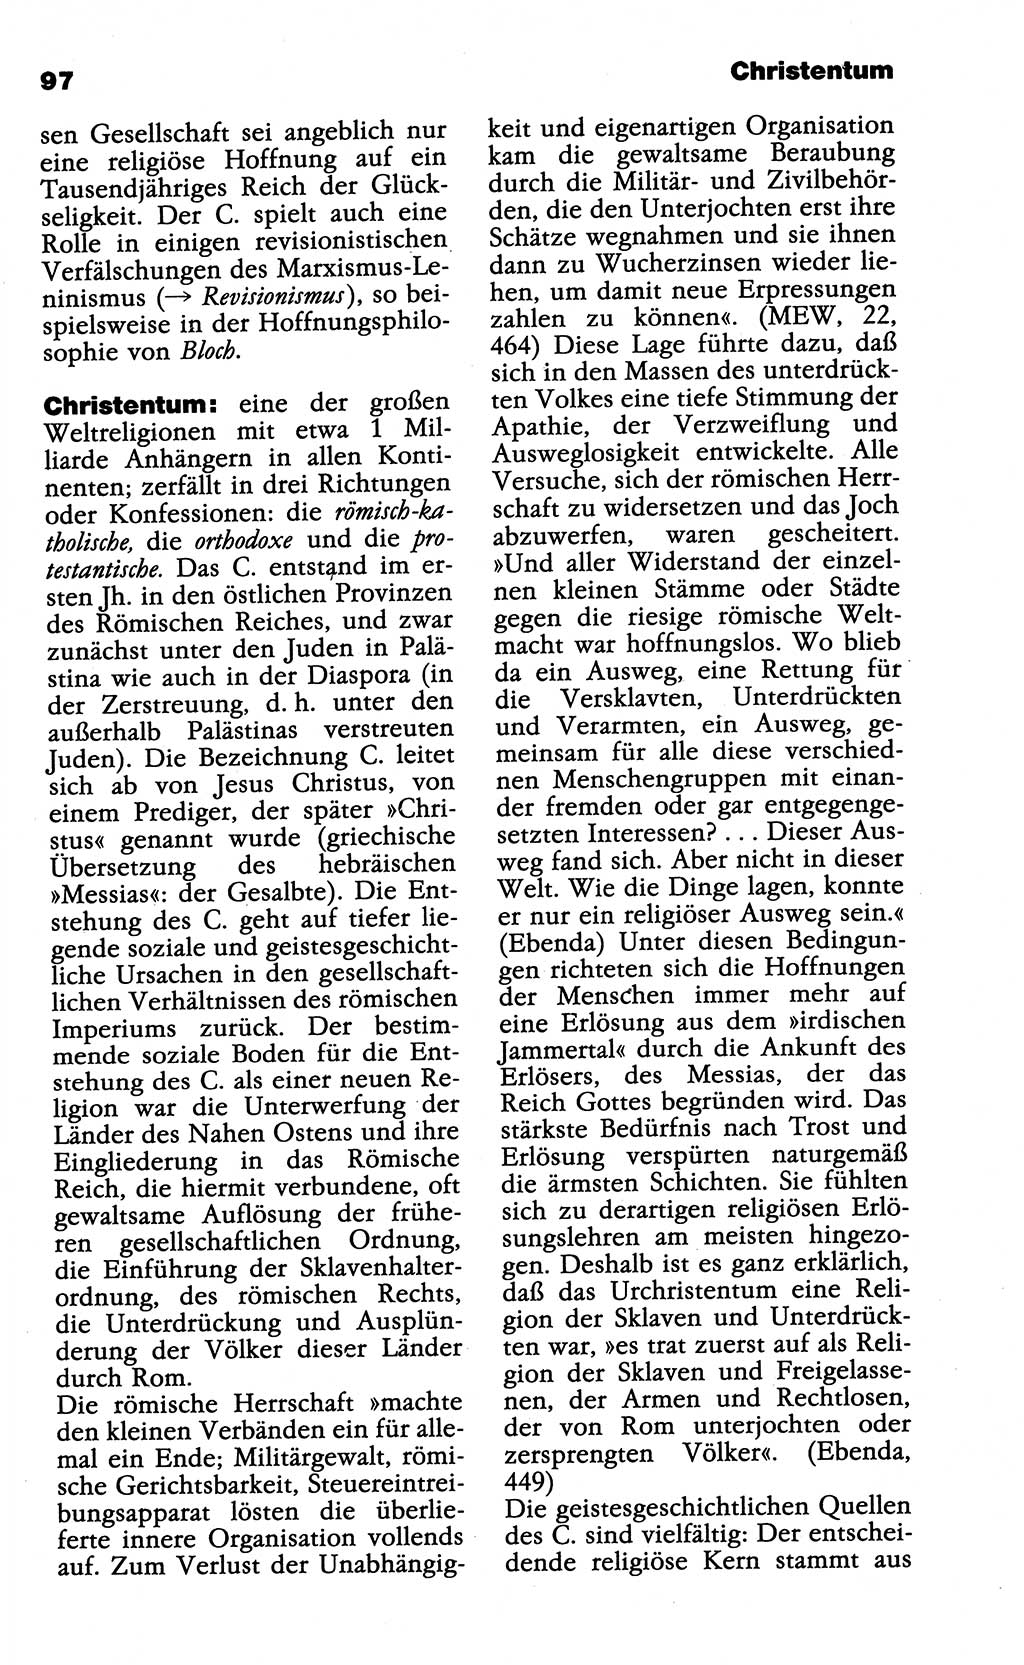 Wörterbuch der marxistisch-leninistischen Philosophie [Deutsche Demokratische Republik (DDR)] 1985, Seite 97 (Wb. ML Phil. DDR 1985, S. 97)